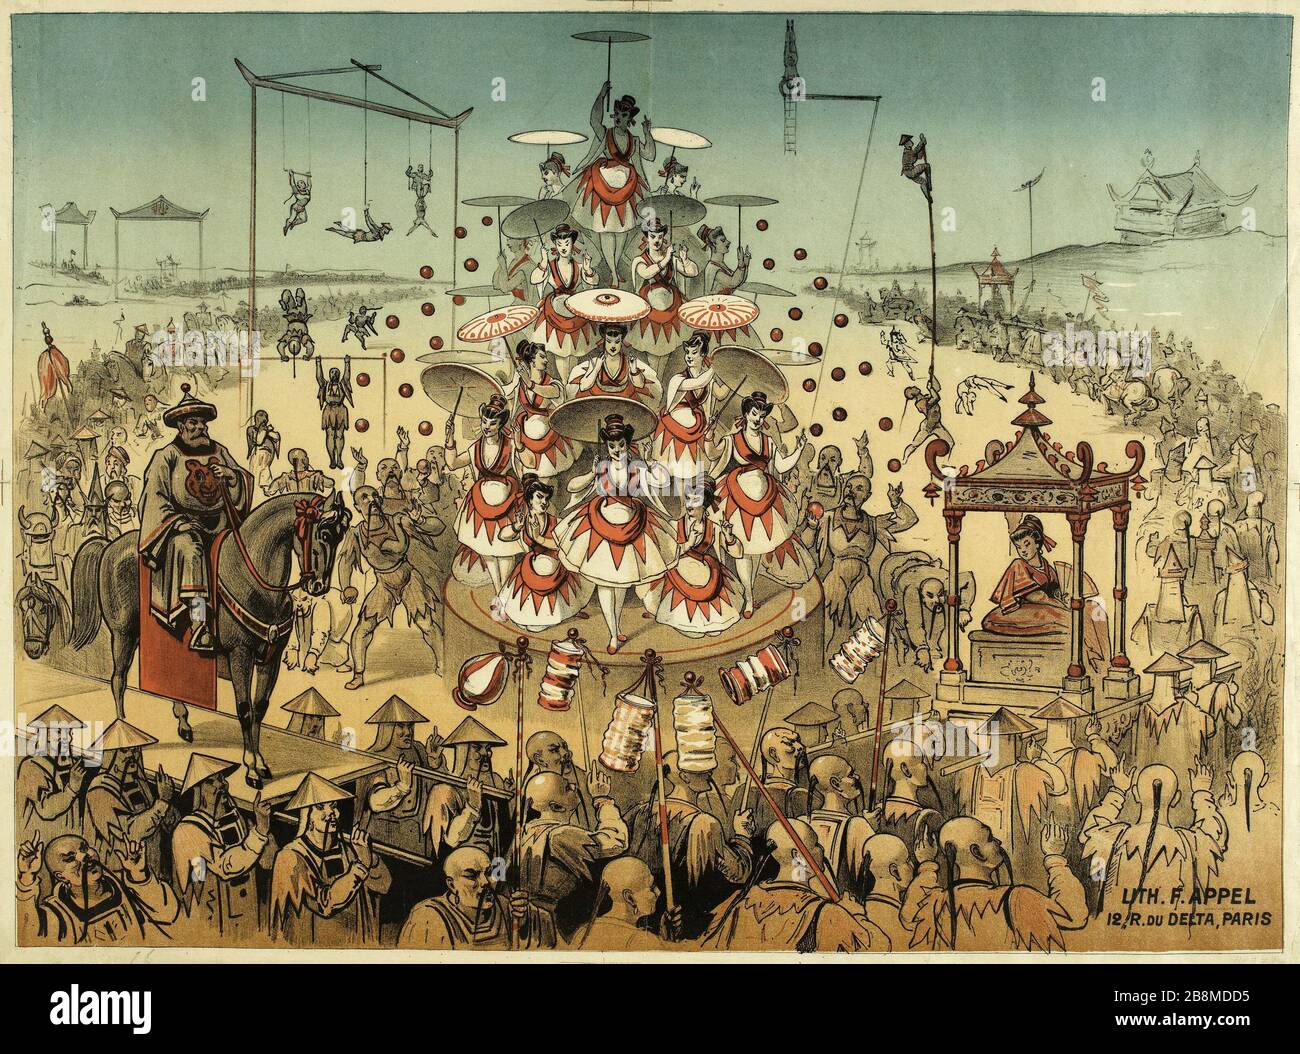 I giapponesi Alfred Choubrac (1853-1902). Affiches pour le cirque japonais. Lithographie couleur. 1880-1900. Parigi, musée Carnavalet. Foto Stock